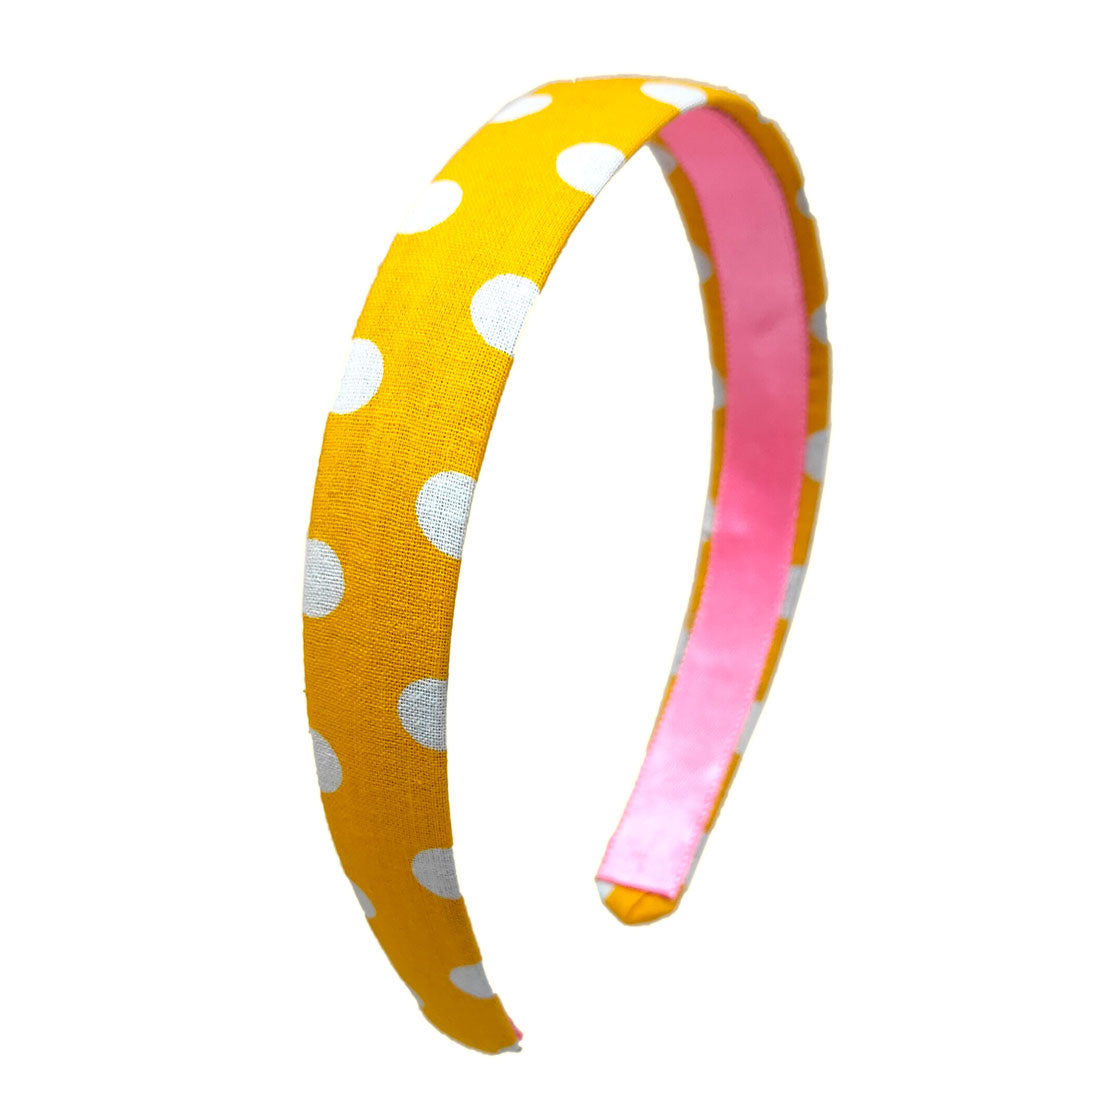 Anokhi Ada Handmade Polka Dots Fabric Hairband/Headband for Girls and Women (Yellow, 09-24H)